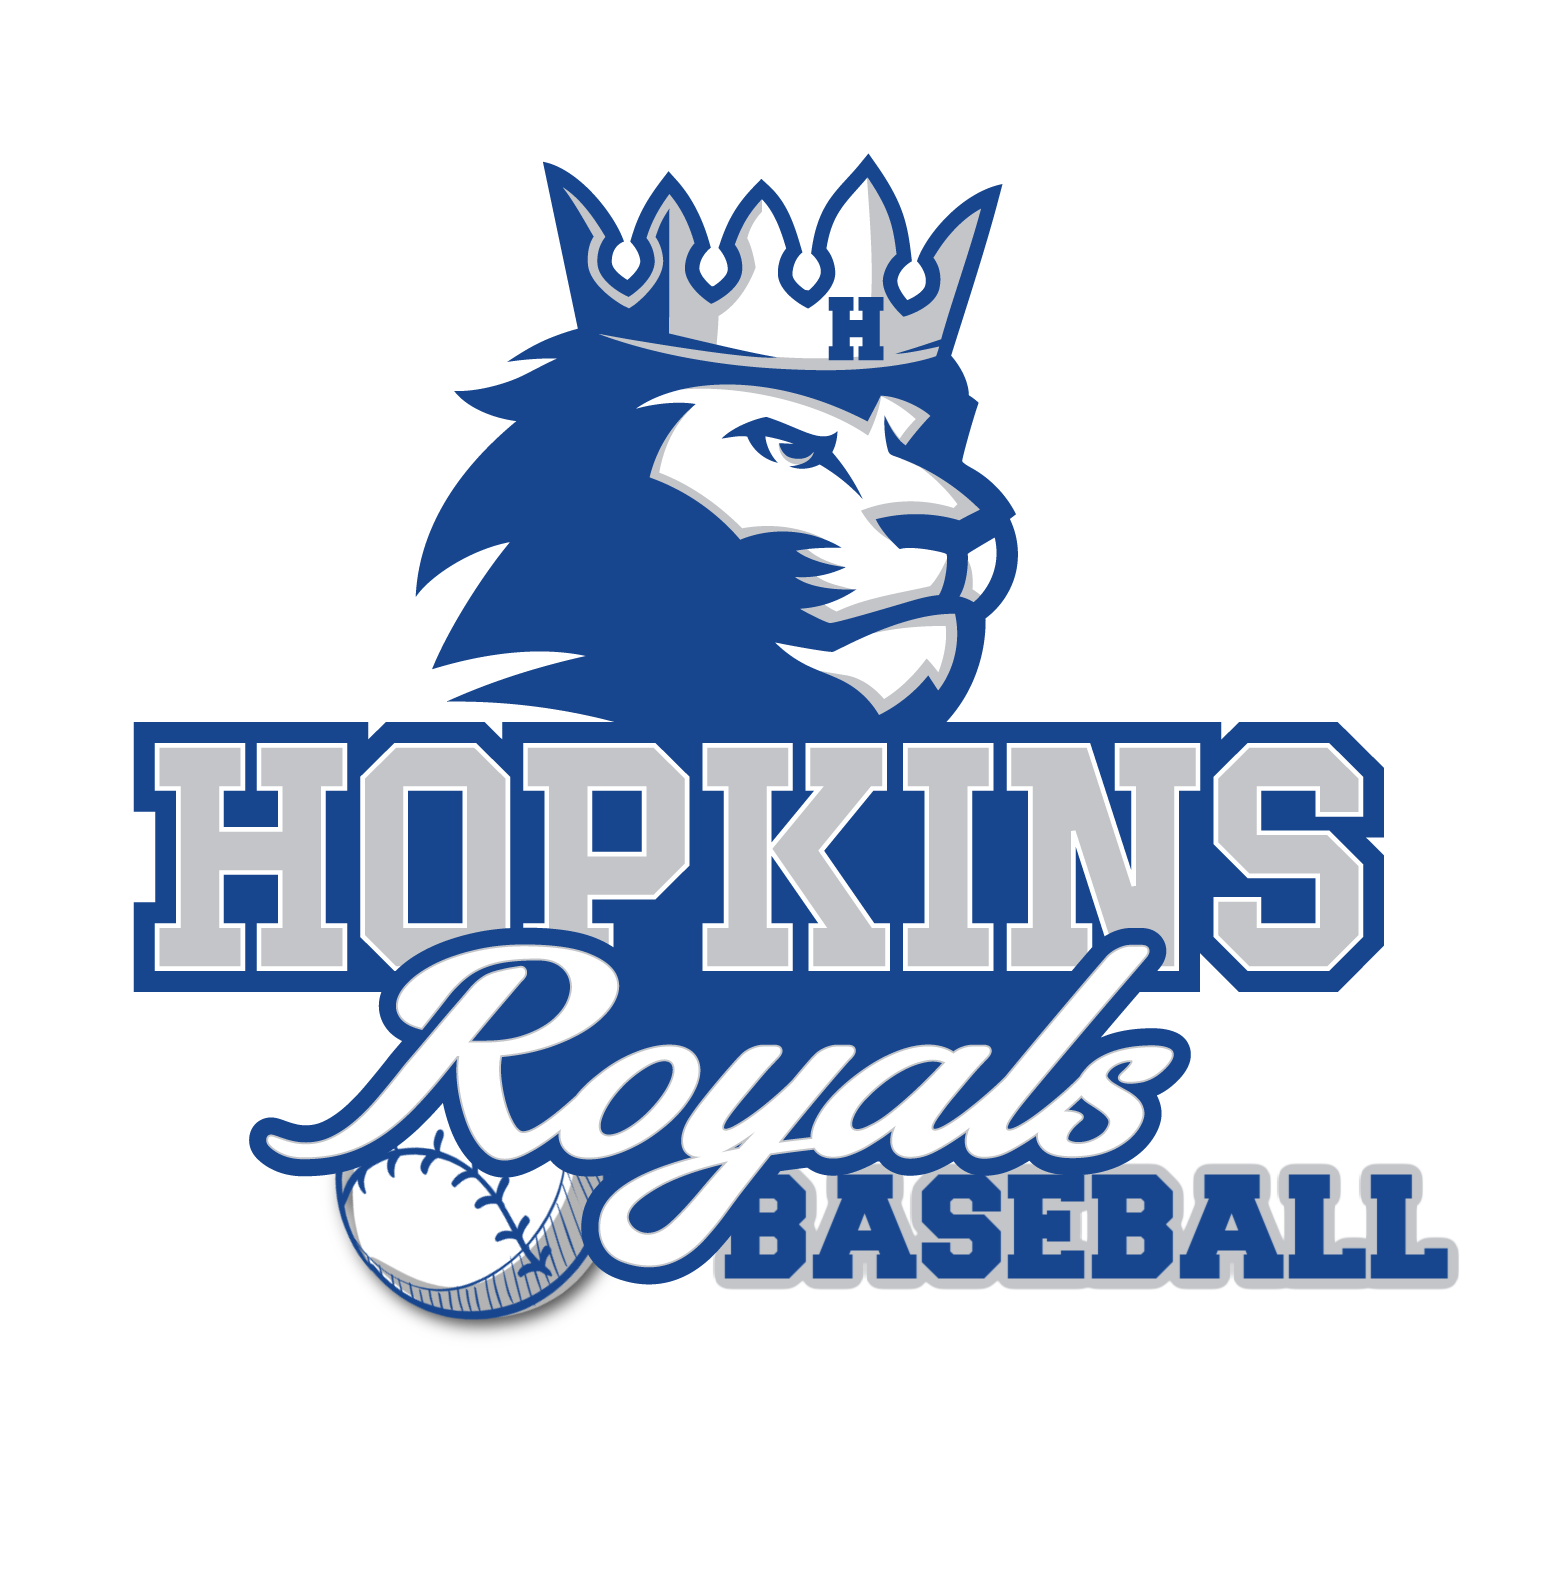 Hopkins Royals Baseball team